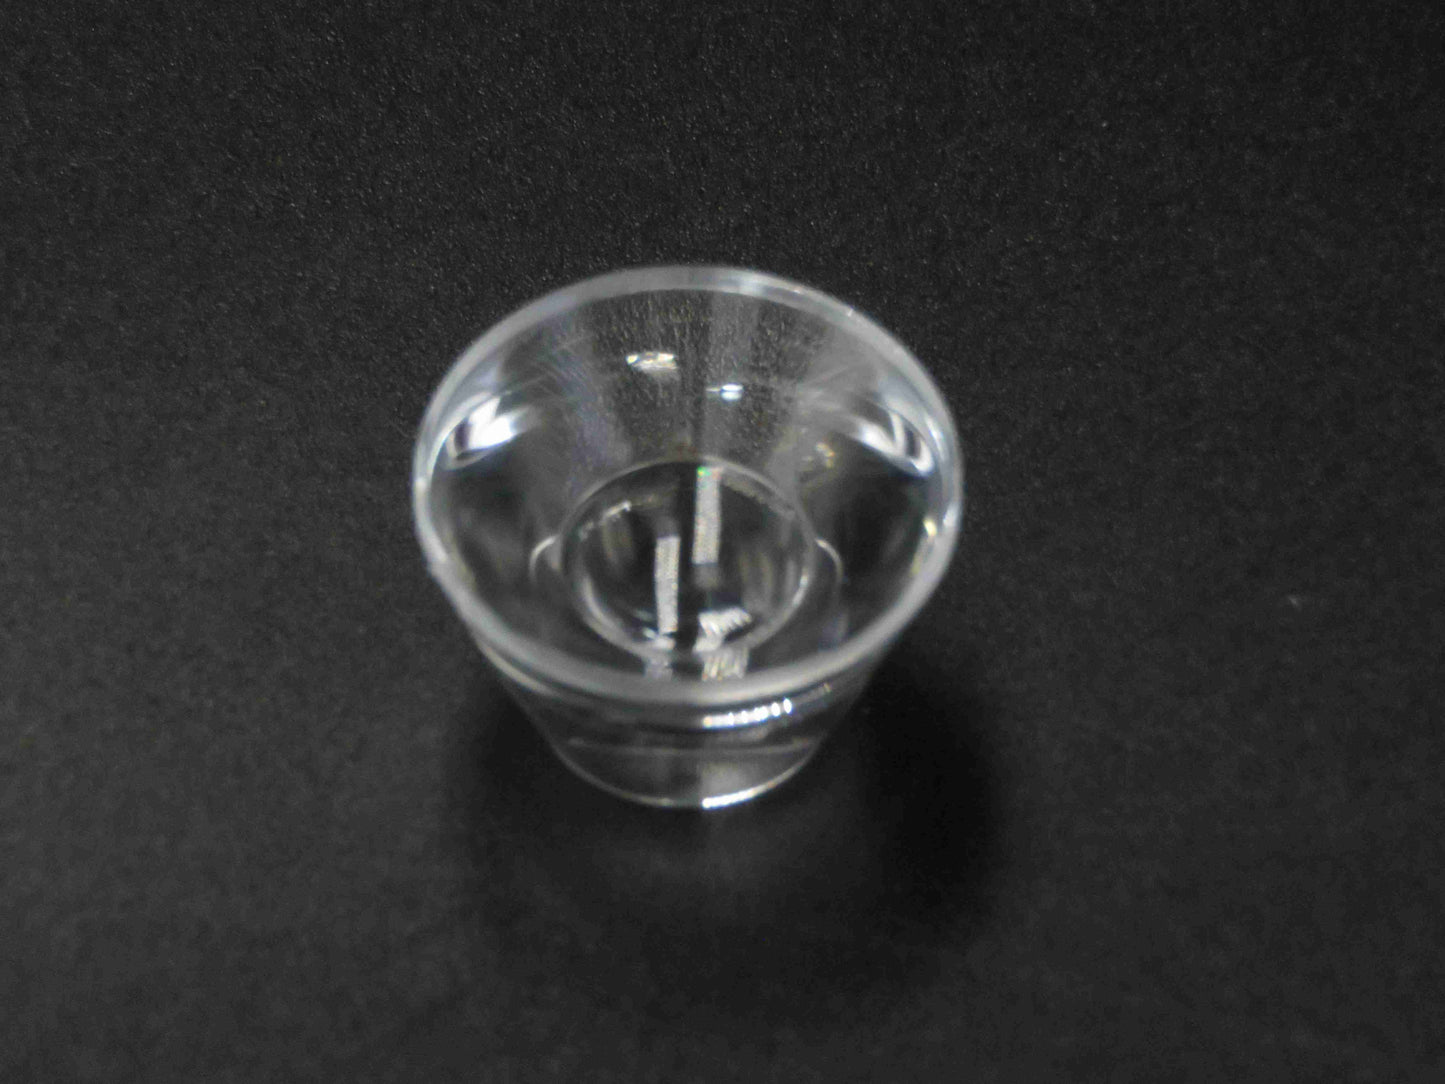 TIR Lens Reflector Collimator Čočka optiky svítilny 6-60° pro LED svítilnu